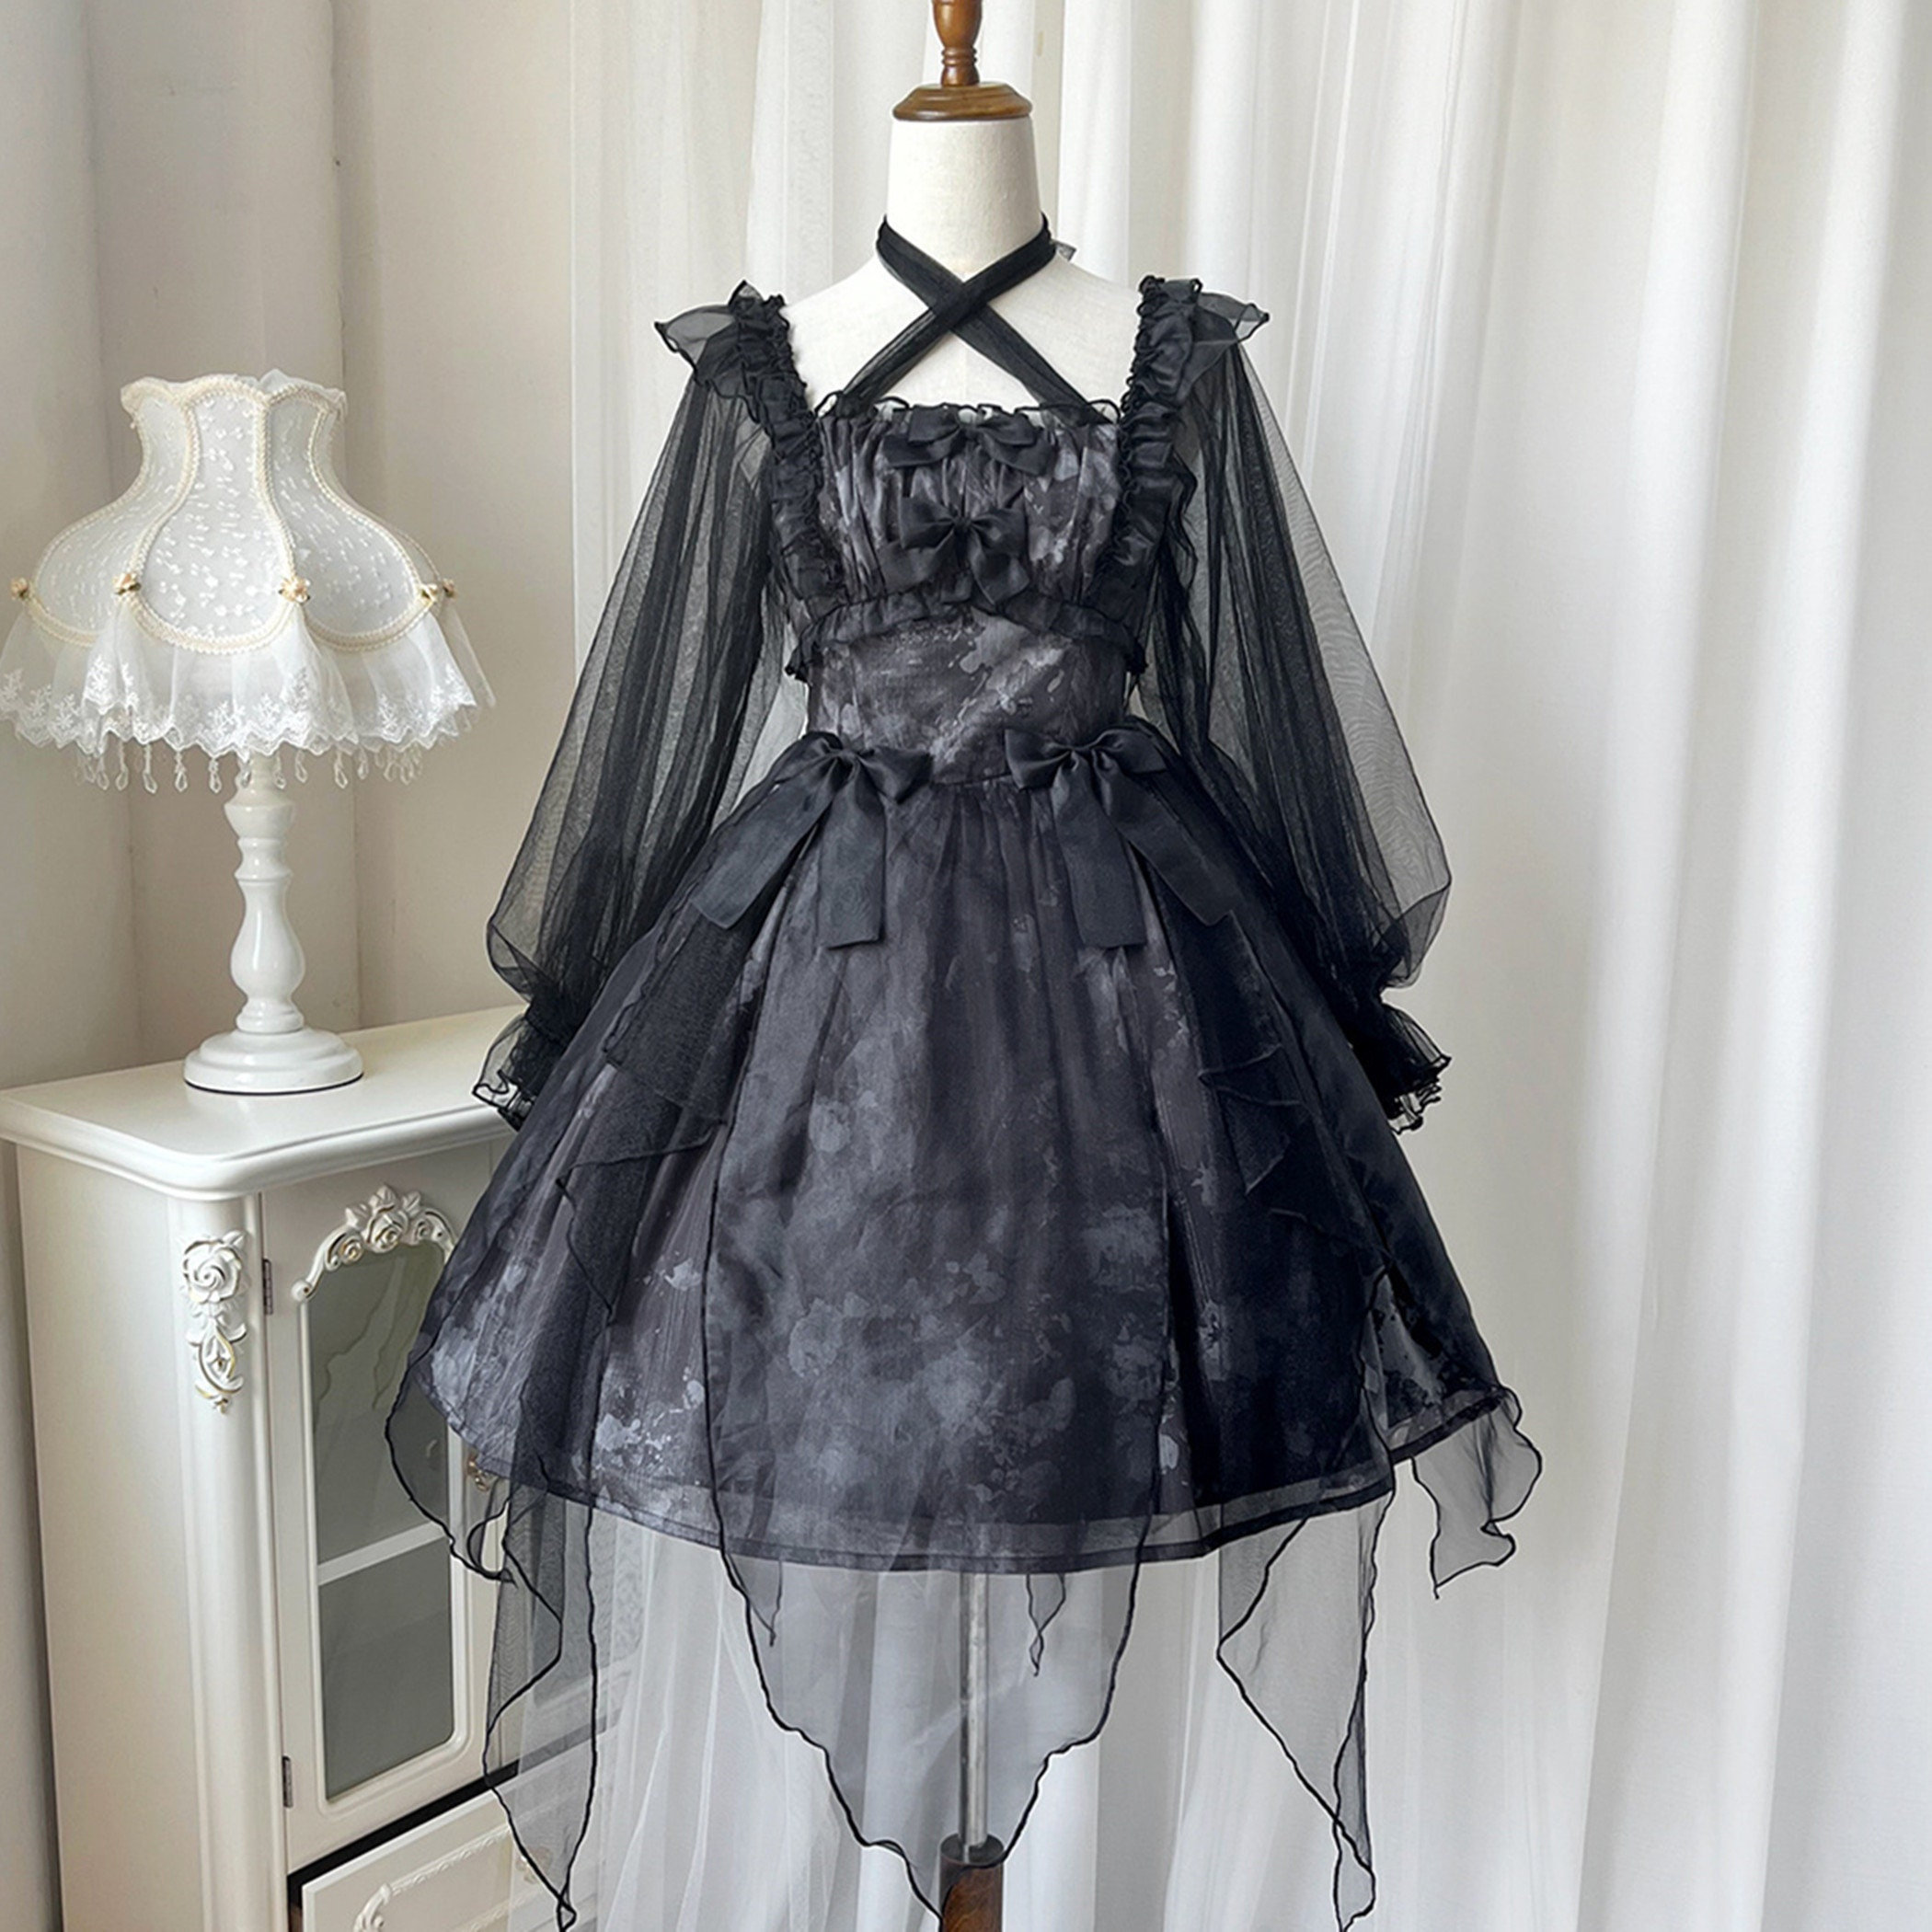 Black Goth Puff Sleeve Dress for Y2K Fashion